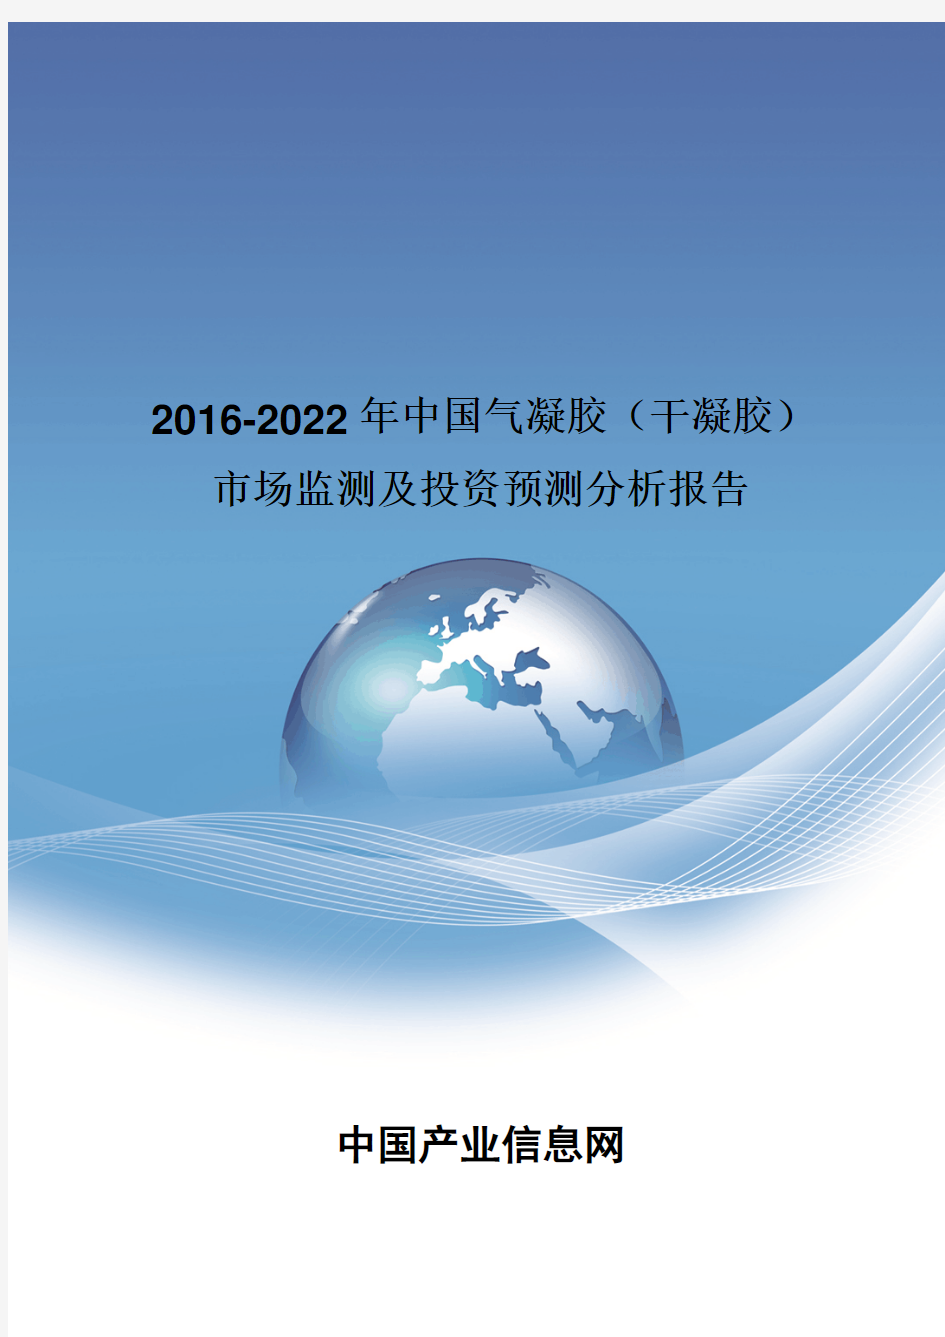 2016-2022年中国气凝胶(干凝胶)市场监测分析报告